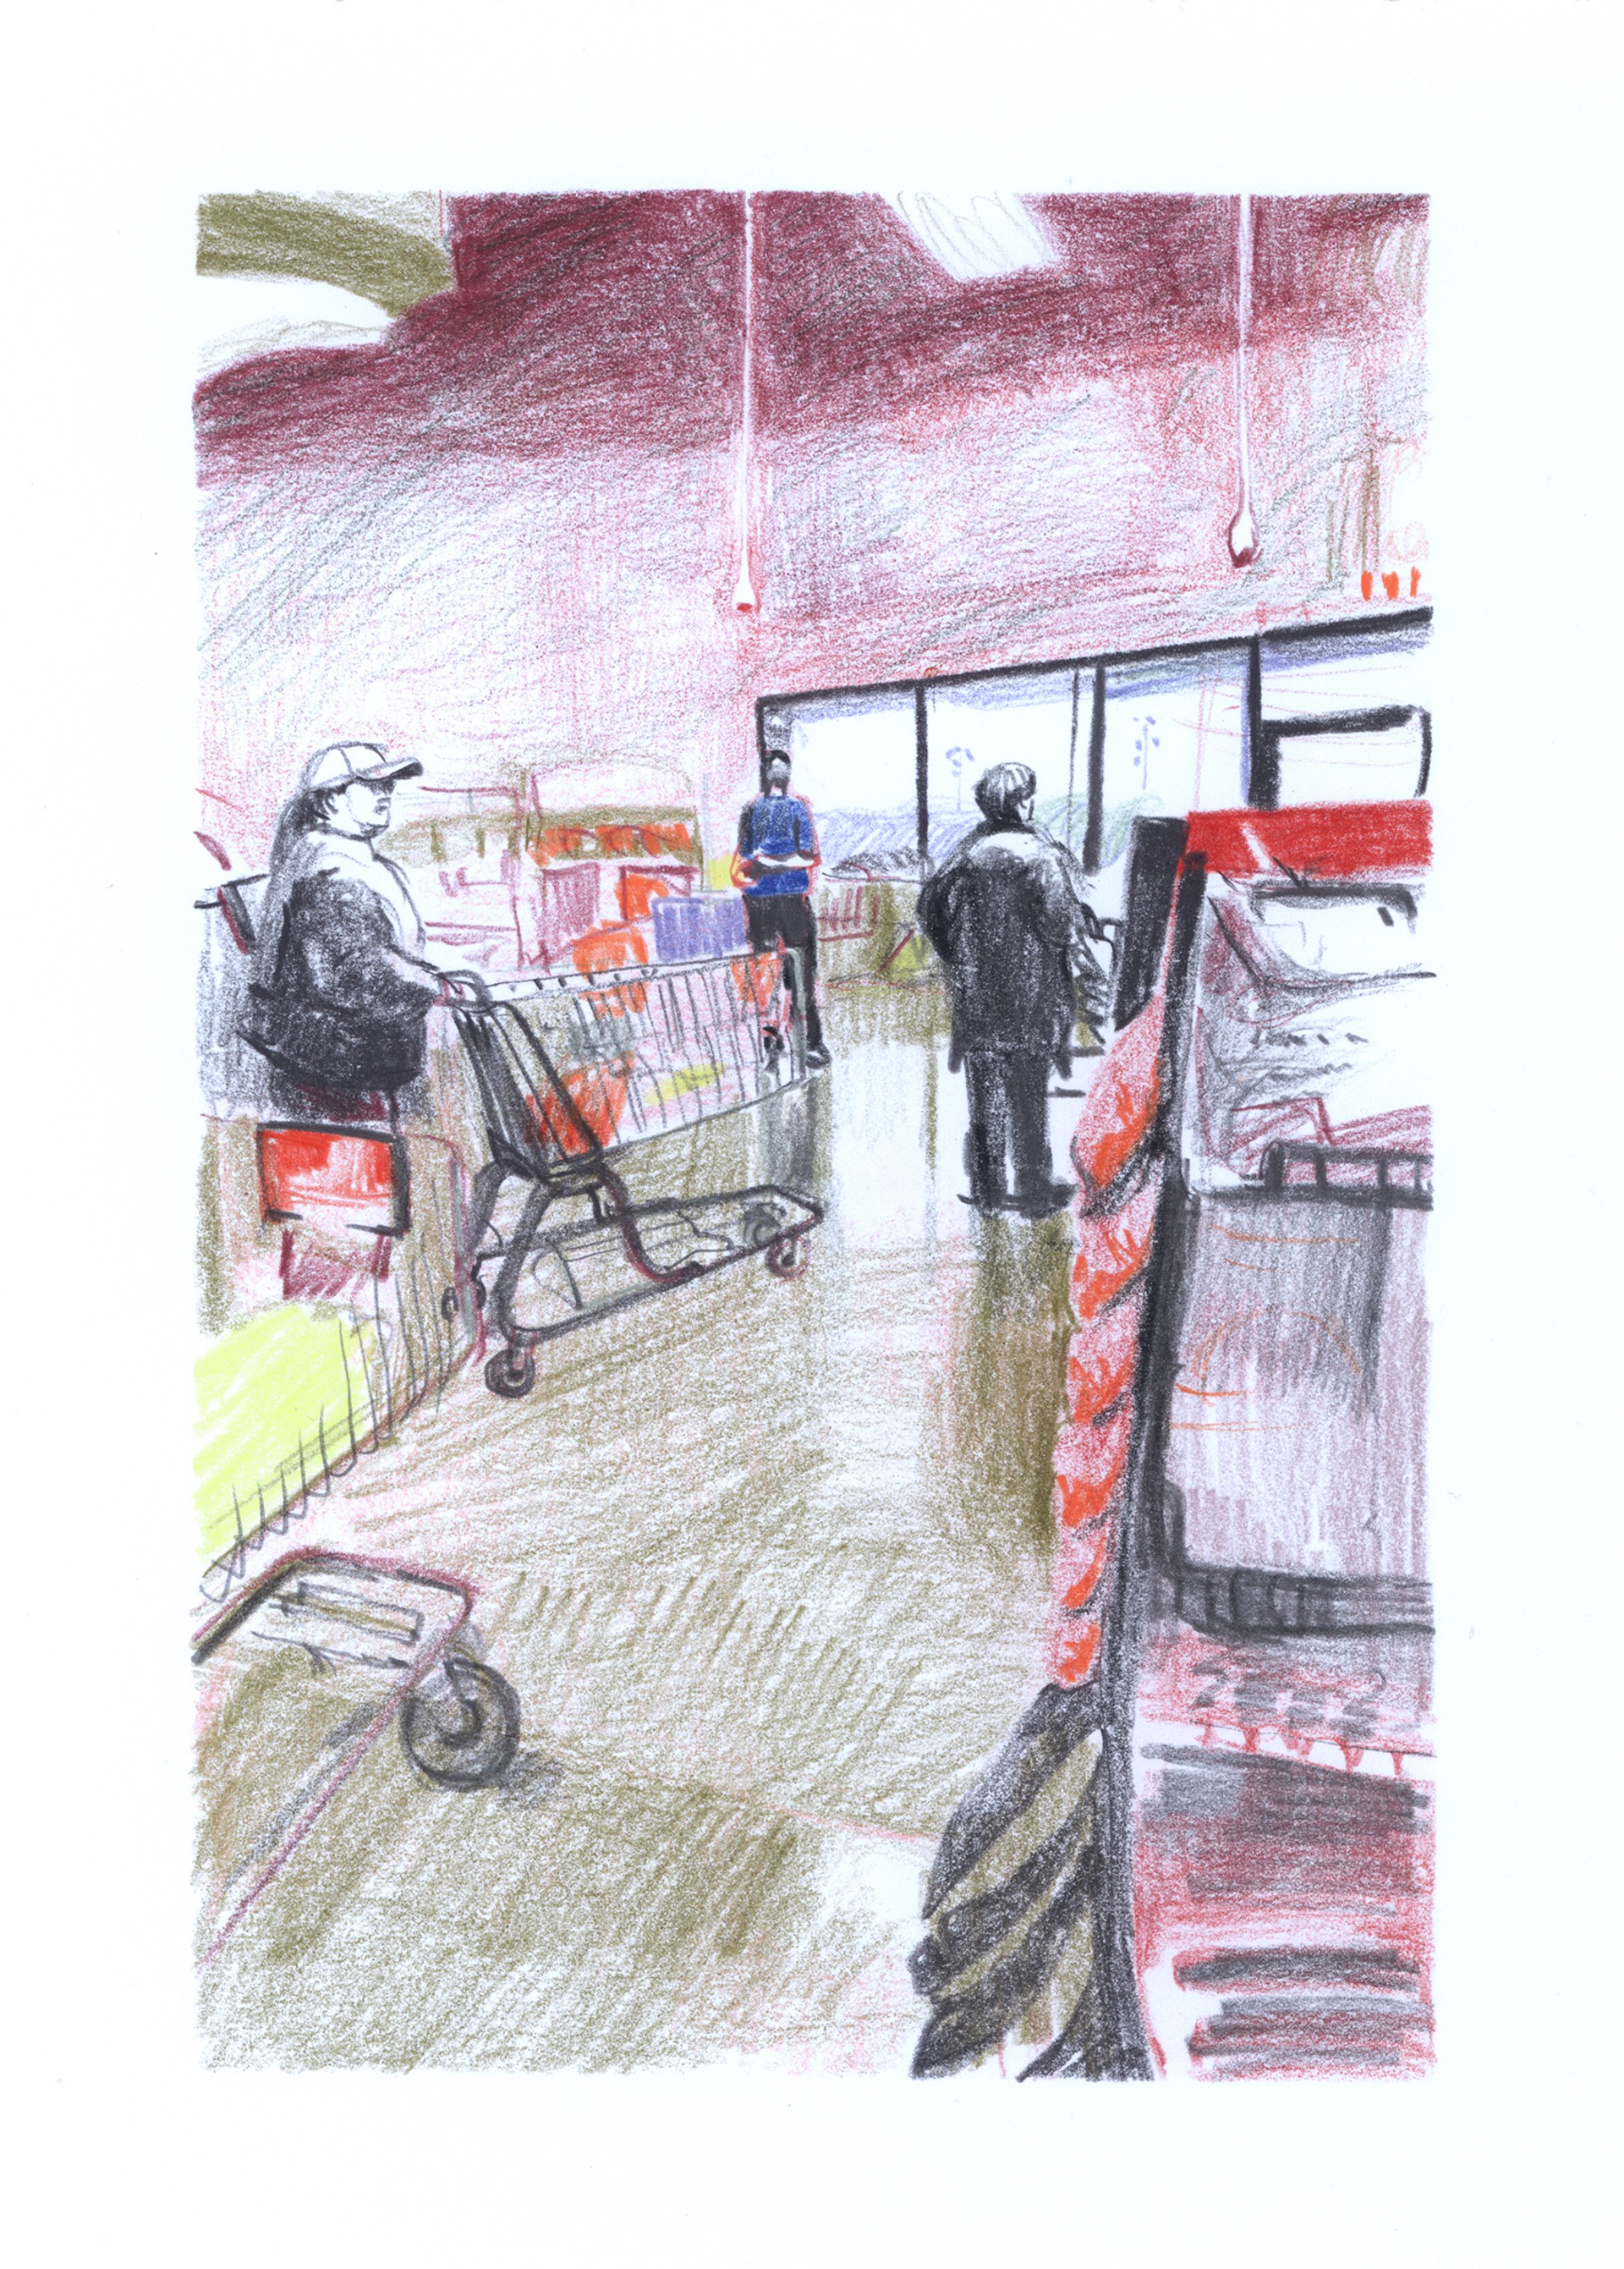 Marketplace/Cashier #31 by Eilis Crean